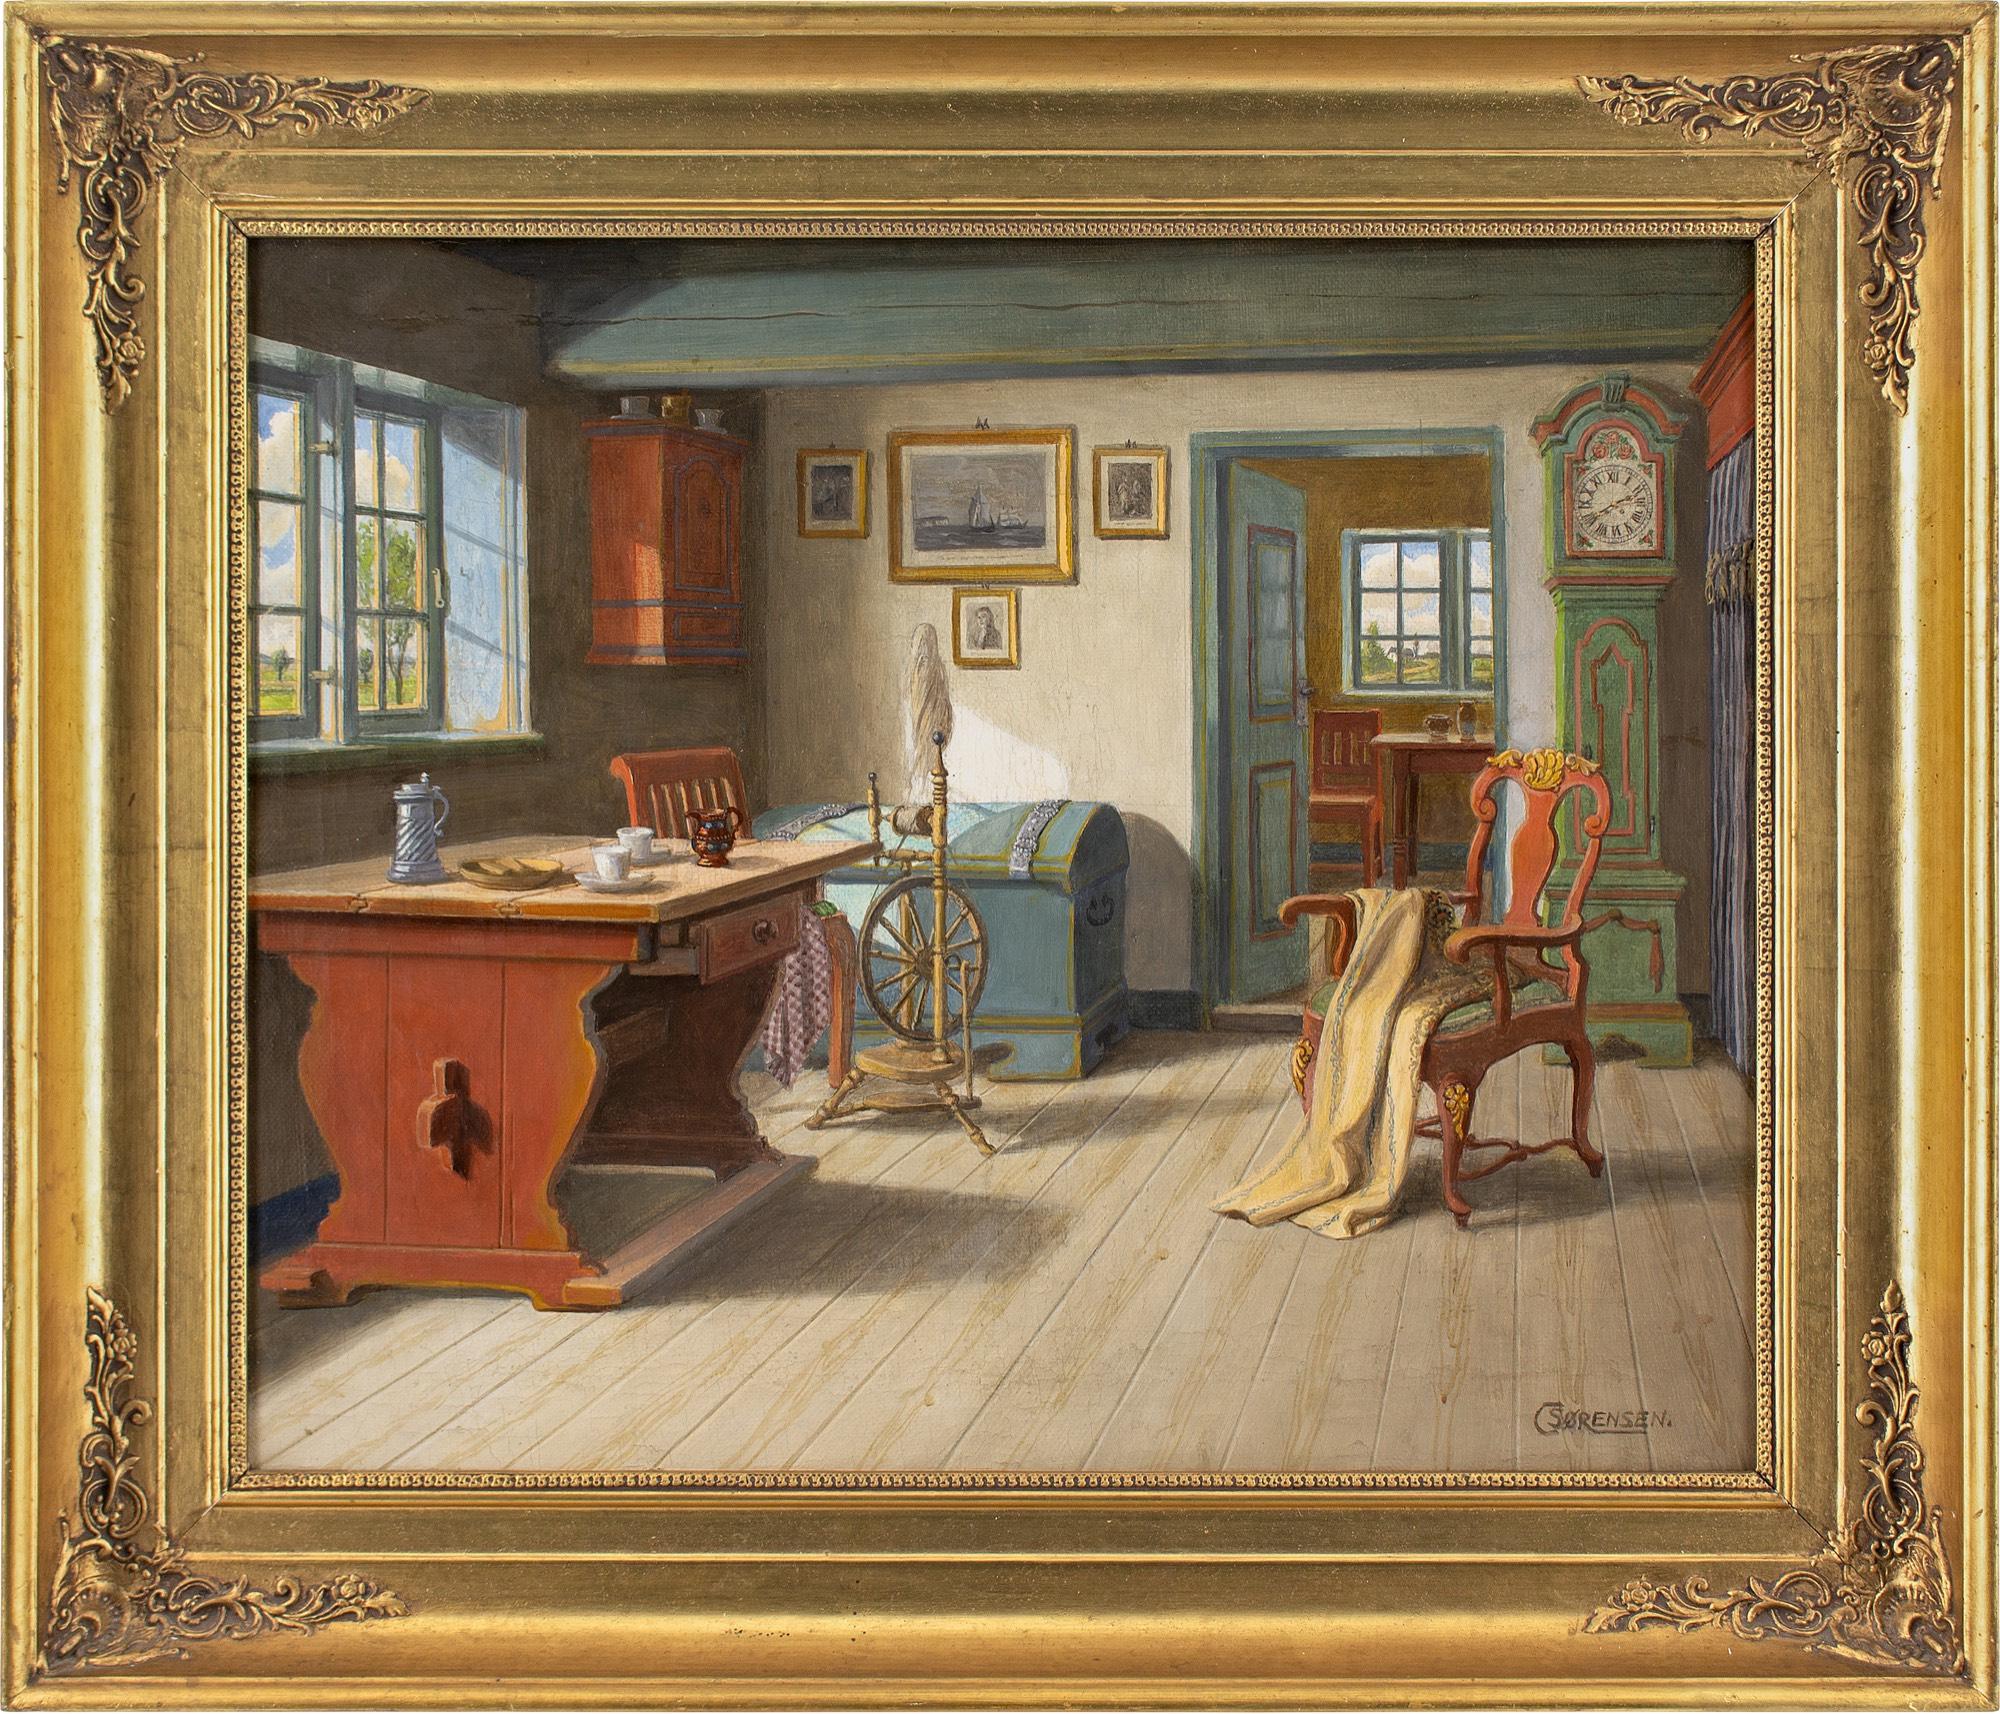 Dieses Ölgemälde des dänischen Künstlers C. Sorensen aus dem frühen 20. Jahrhundert zeigt ein rustikales Interieur mit Tisch, Spinnrad, Stuhl, Uhr und Truhe.

Über C. Sørensen ist wenig bekannt, was angesichts seiner offensichtlichen Fähigkeiten